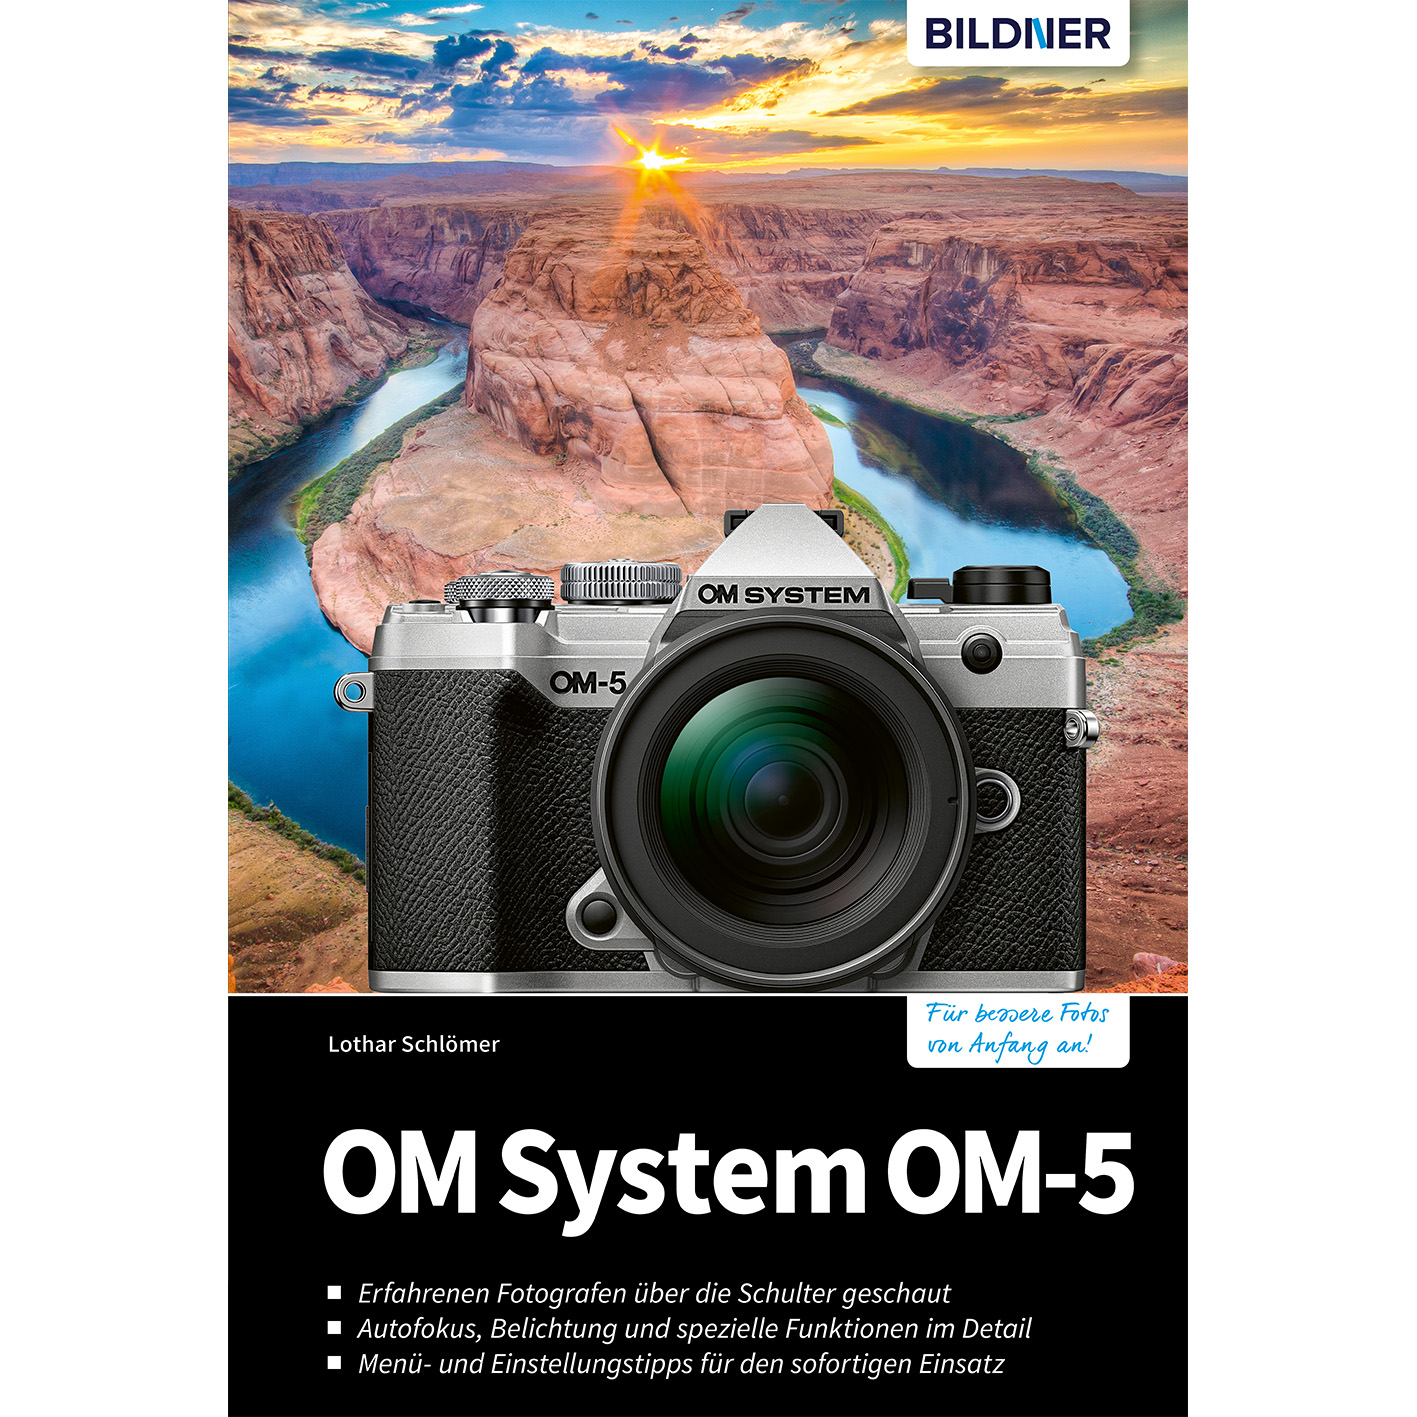 - Ihrer Das OM zu System Praxisbuch Kamera OM-5 umfangreiche